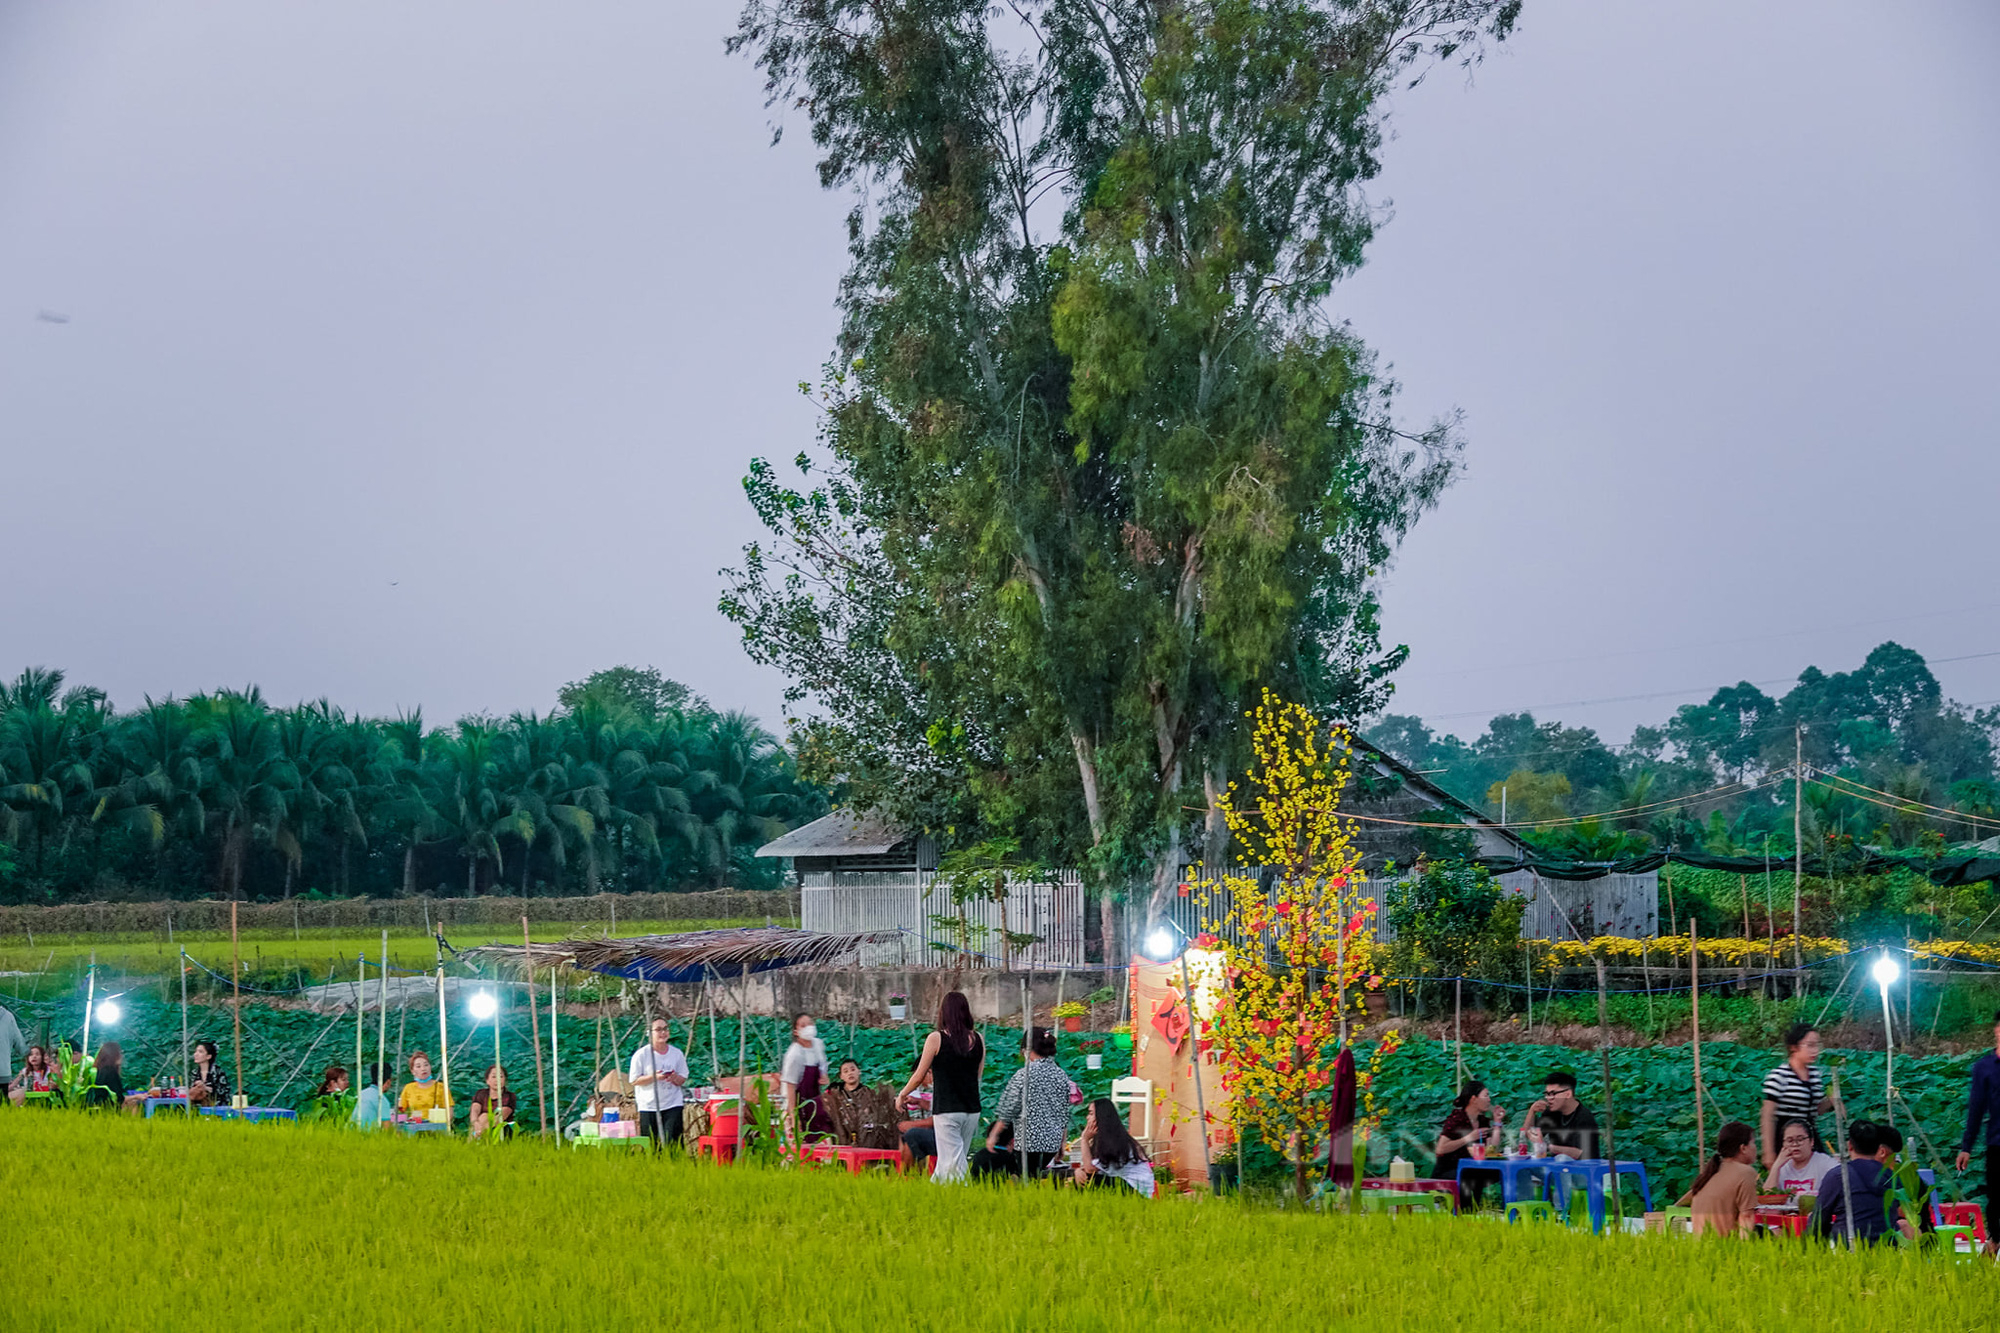 Quán ăn giữa ruộng ở Cần Thơ bất ngờ thu hút cả trăm người dân đến ăn, chụp ảnh mỗi ngày - Ảnh 9.